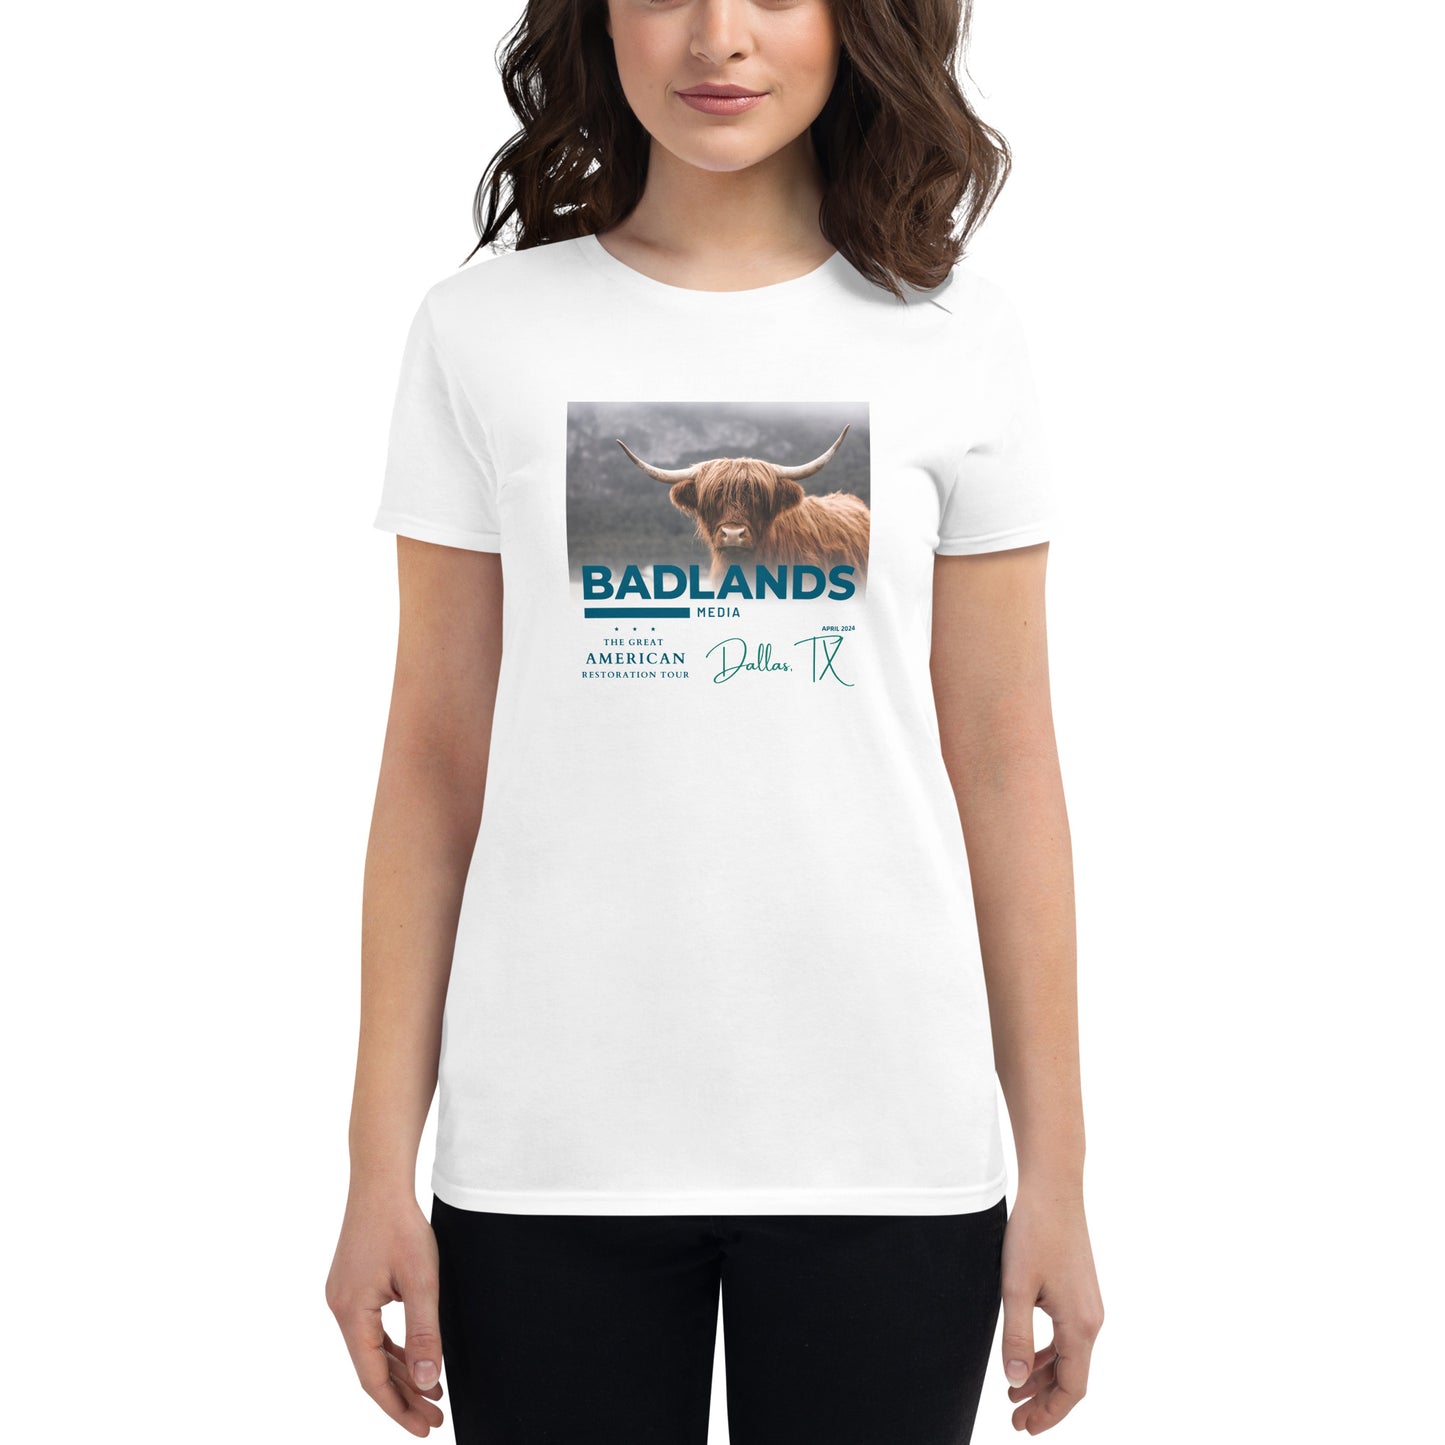 GART Dallas Women's short sleeve t-shirt